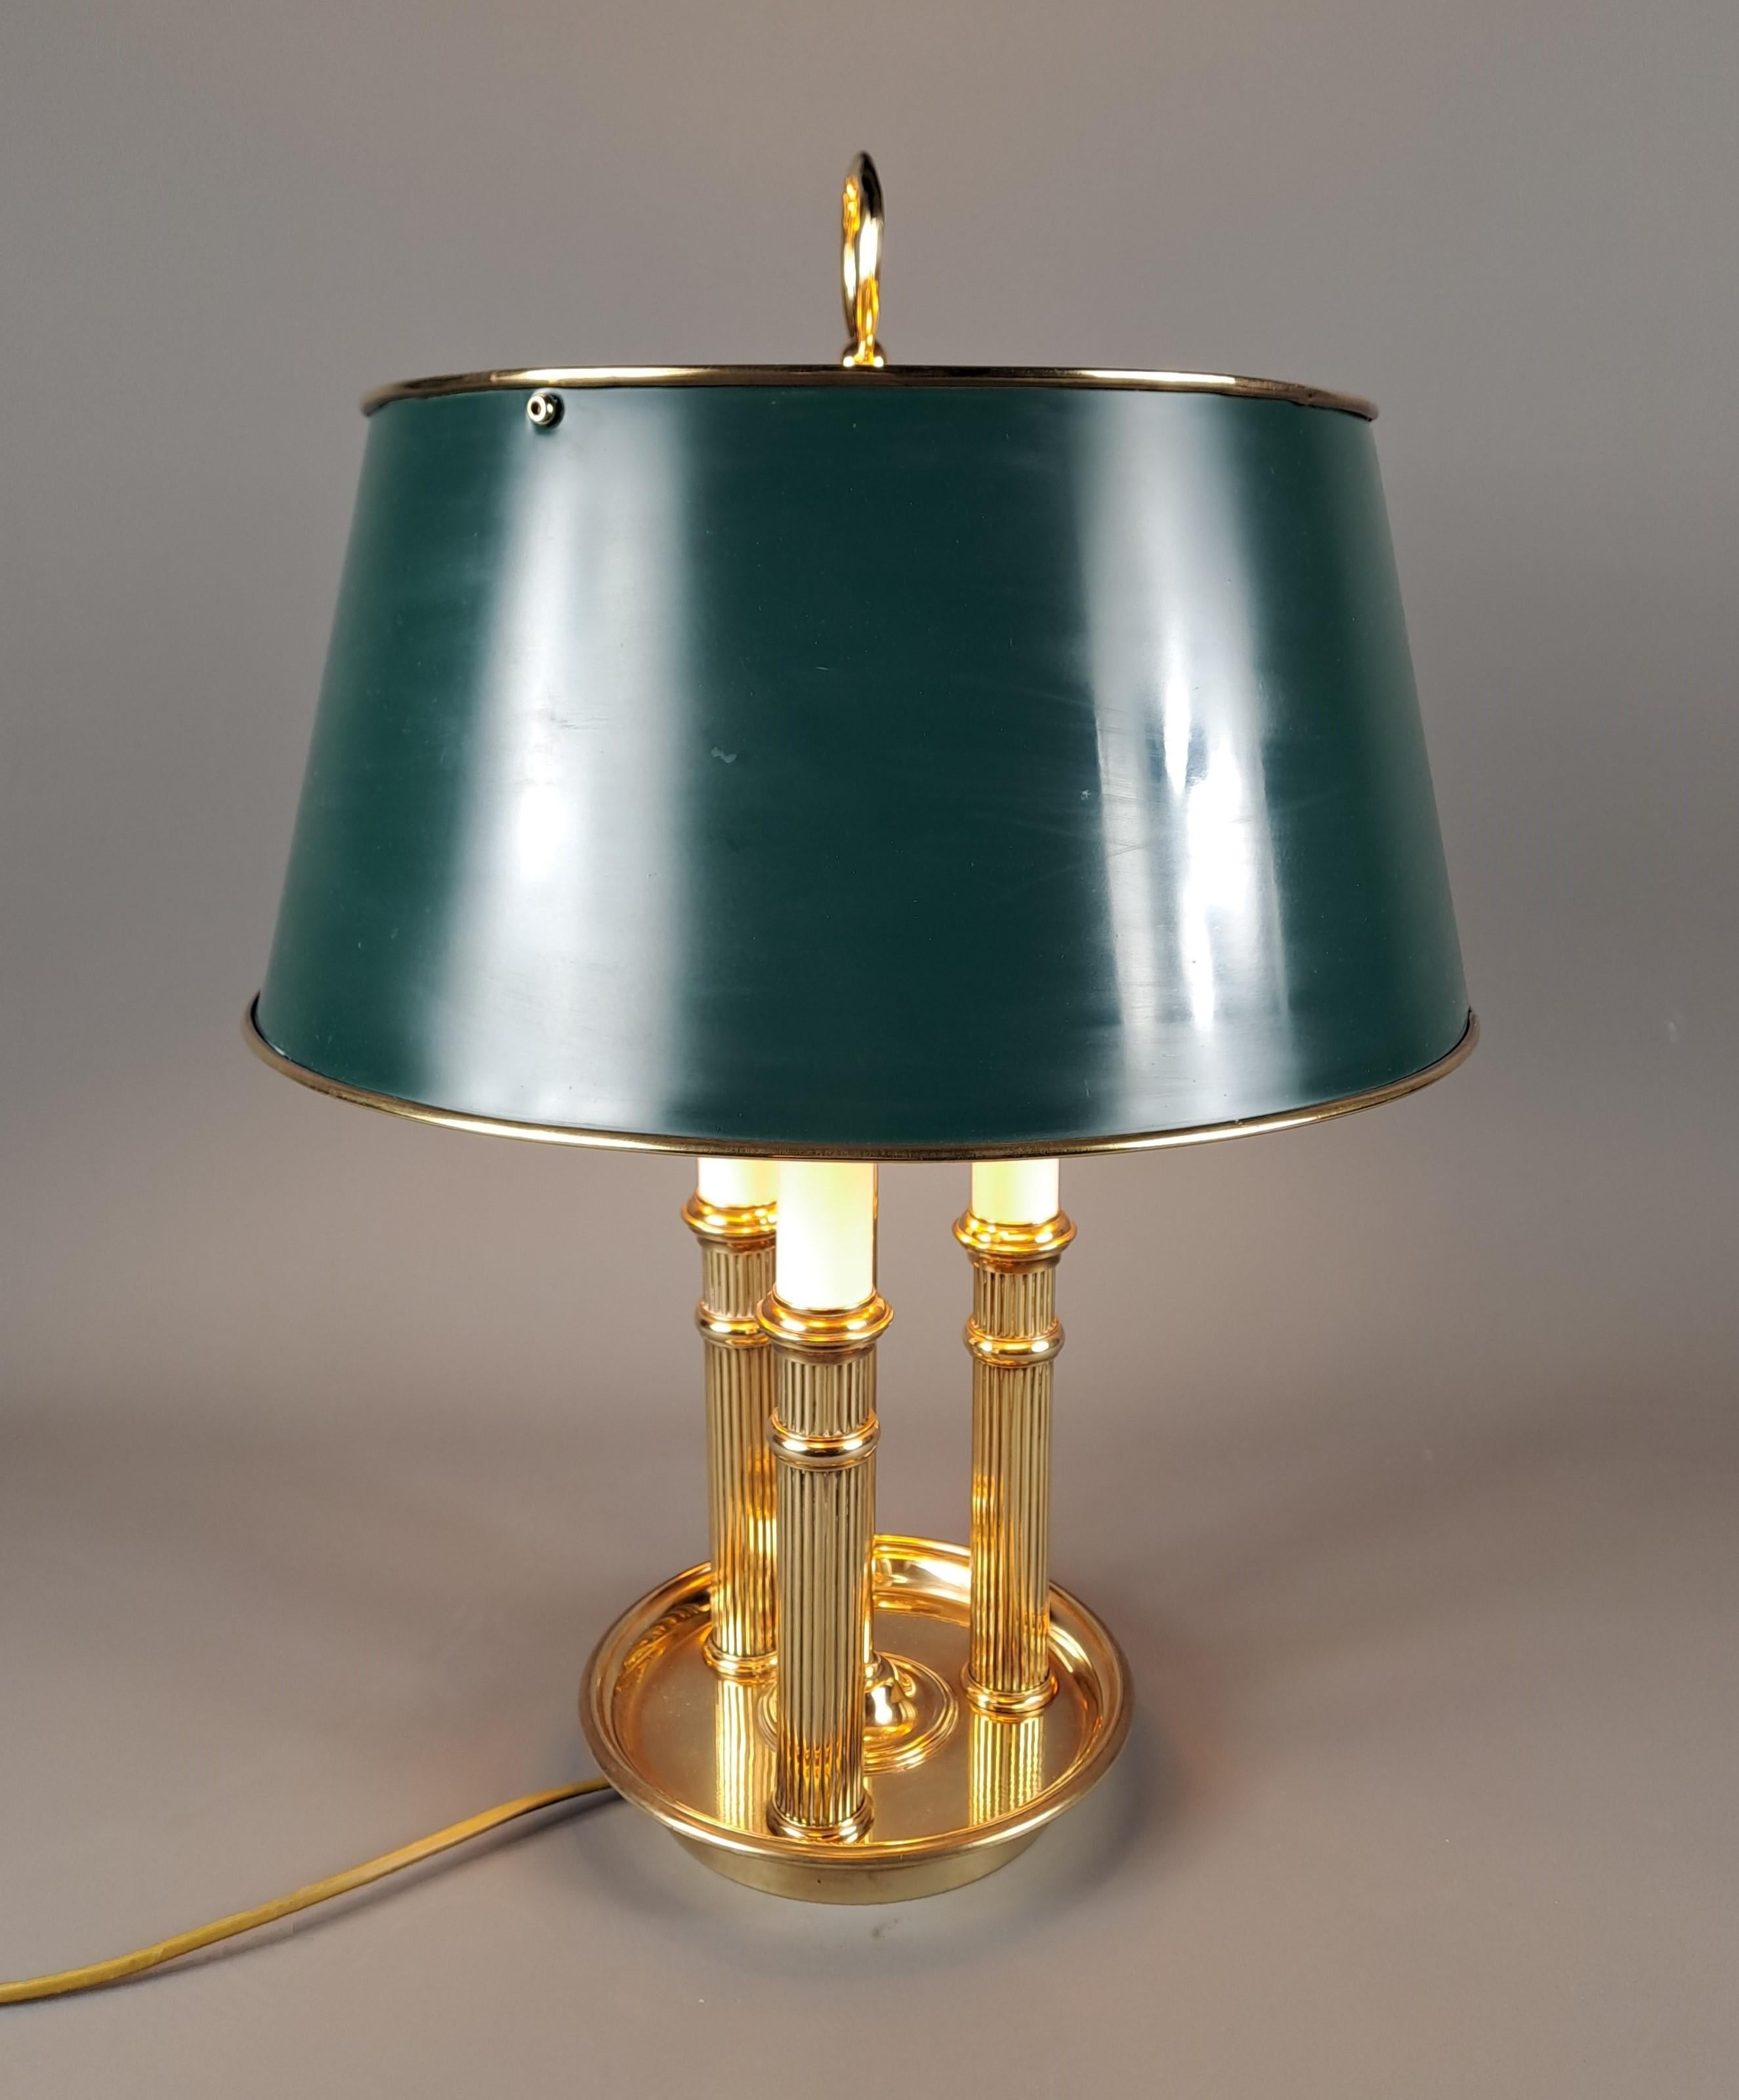 Bouillotte-Lampe im Empire-Stil aus vergoldeter Bronze, mit einem grün lackierten Blechschirm.
Beleuchtet von 3 Lichtern.

Französische Qualitätsarbeit aus dem 20. Jahrhundert (um 1950)

Perfekter Zustand, Elektrifizierung komplett erneuert